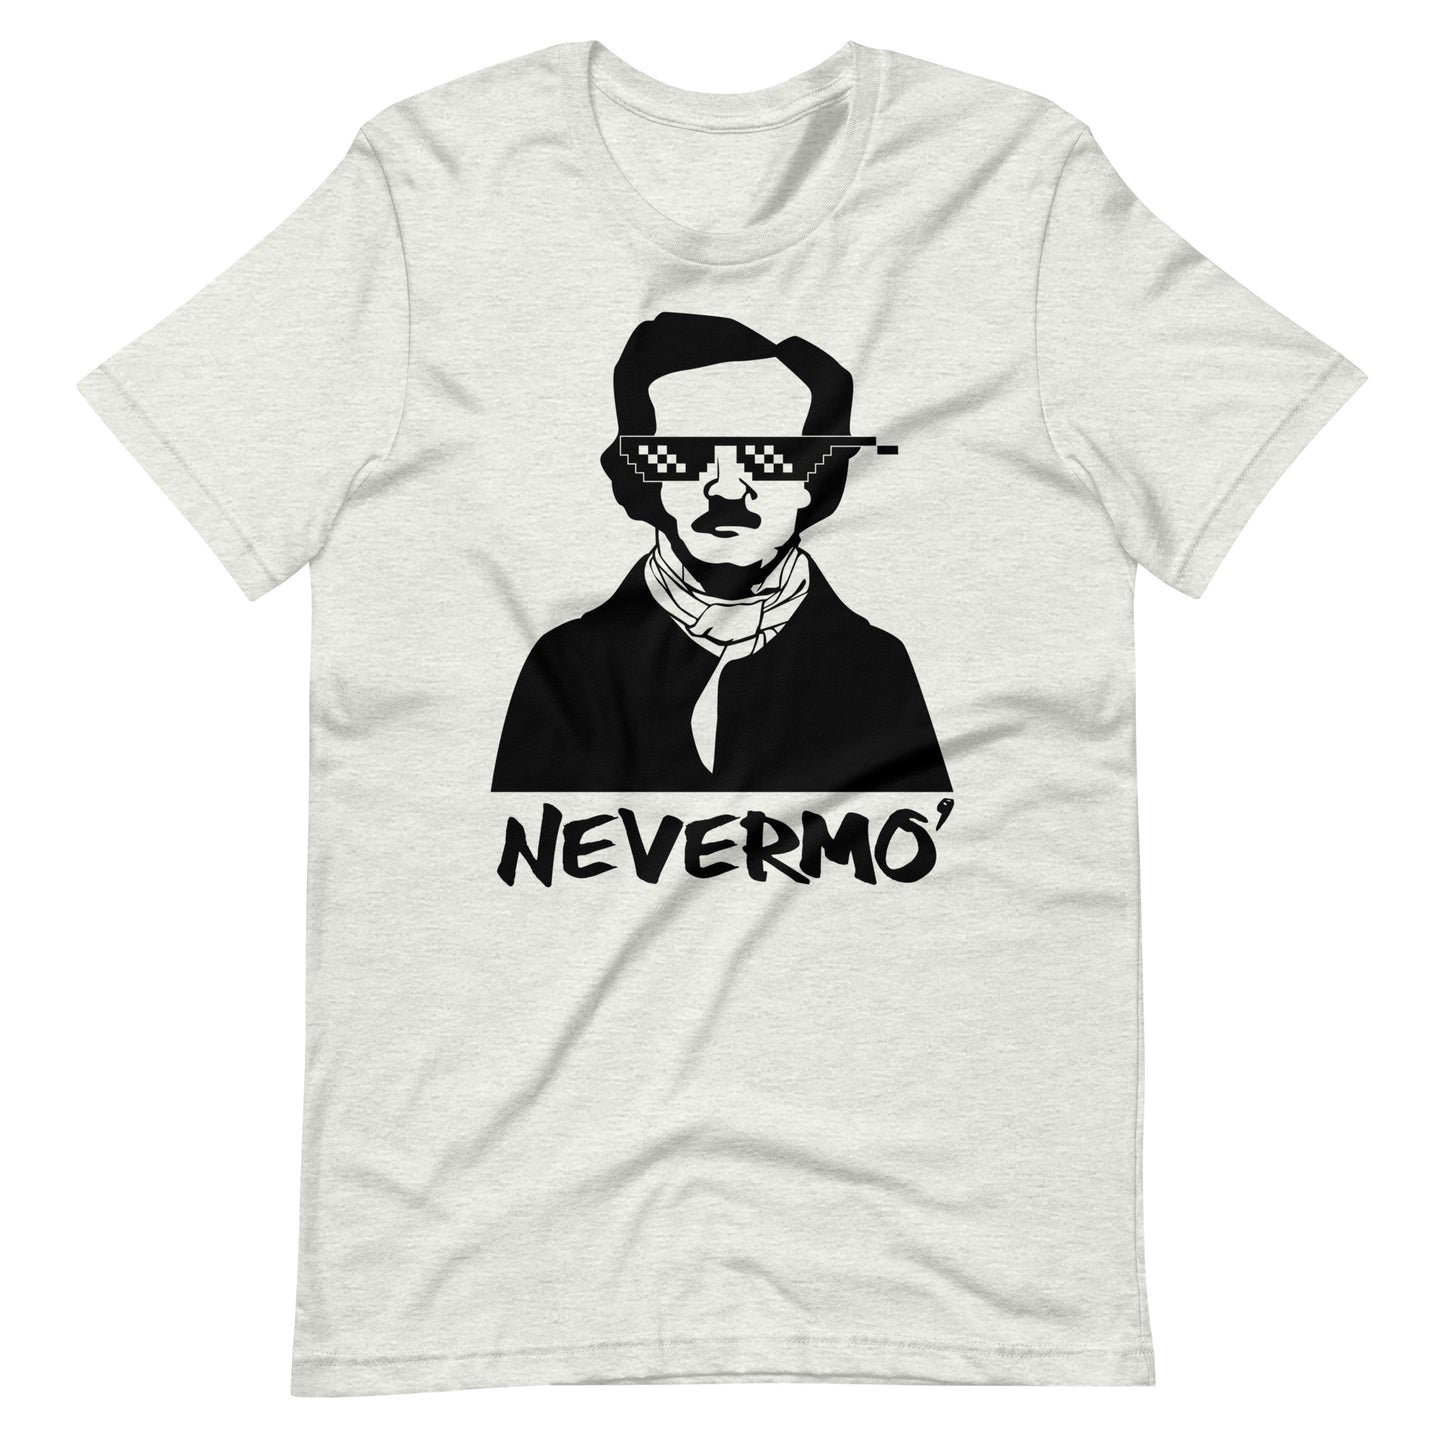 Women's Edgar Allan Poe "Nevermo" t-shirt - Ash Front